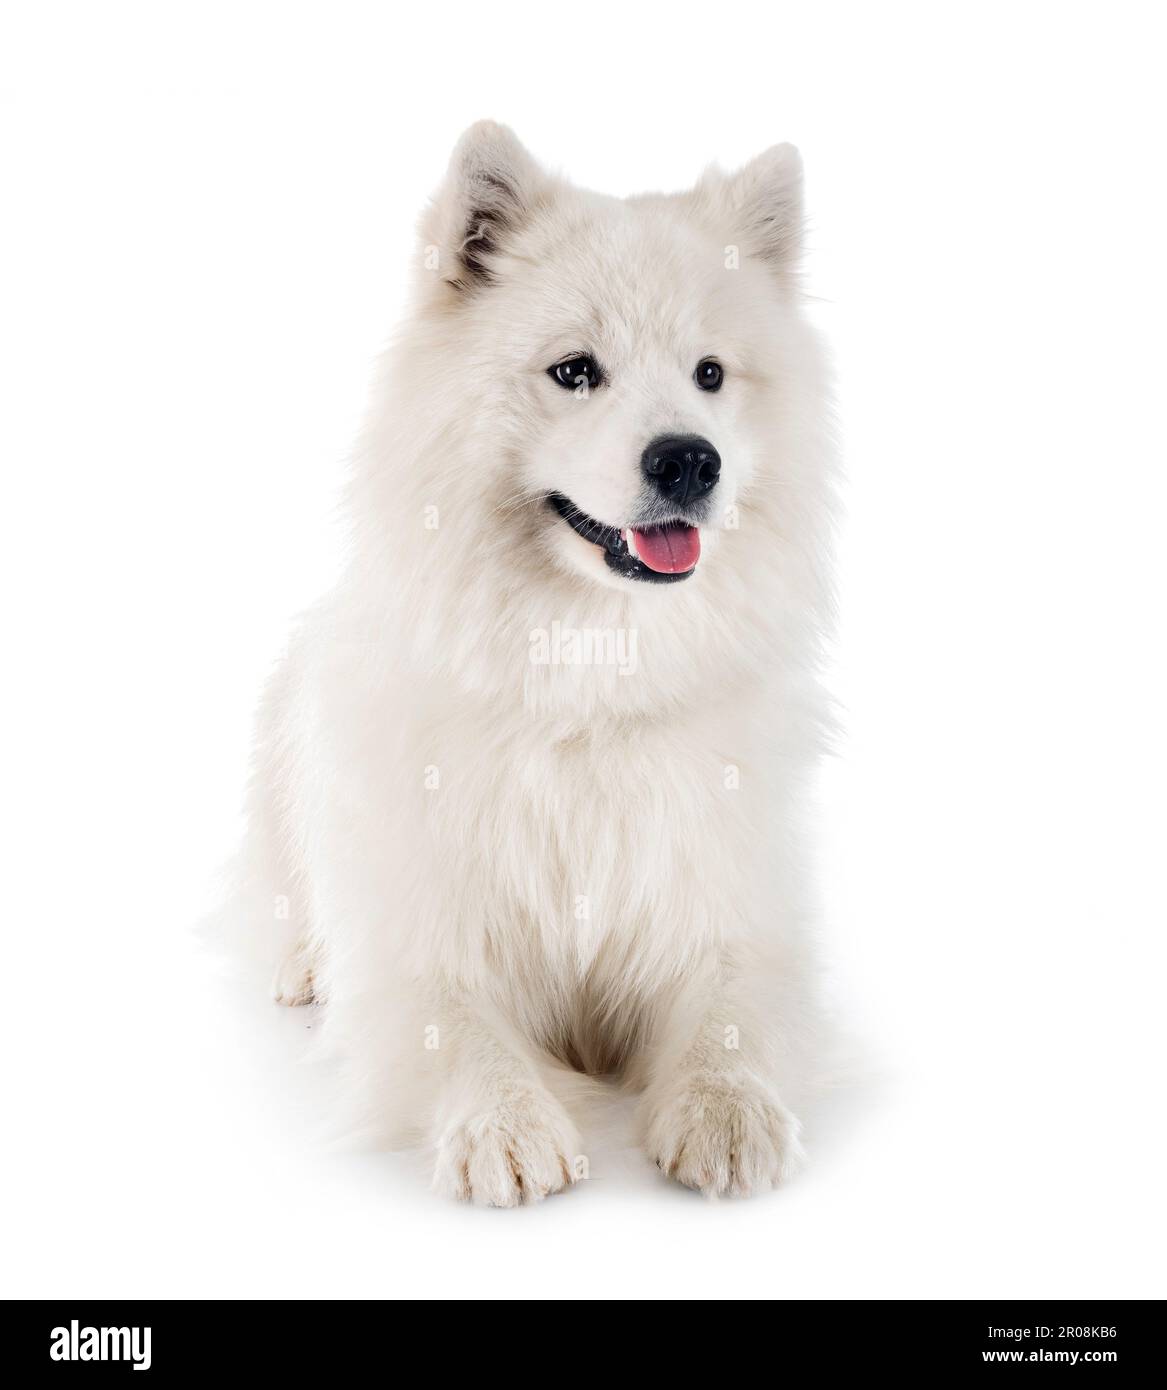 samoyed dog in front of white background Stock Photo